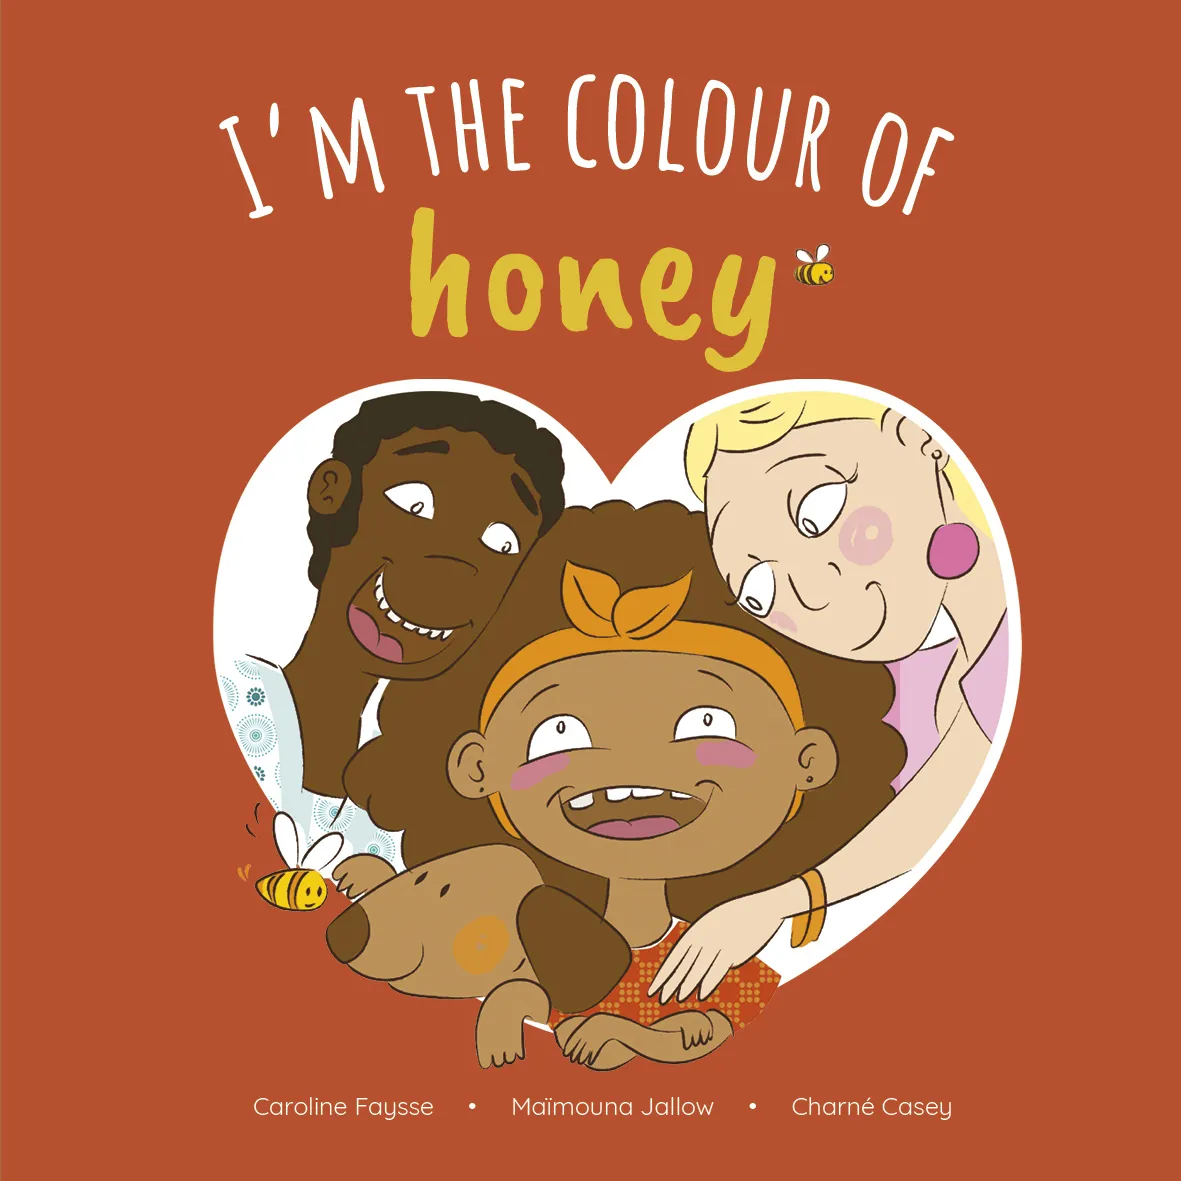 I'm the Colour of Honey